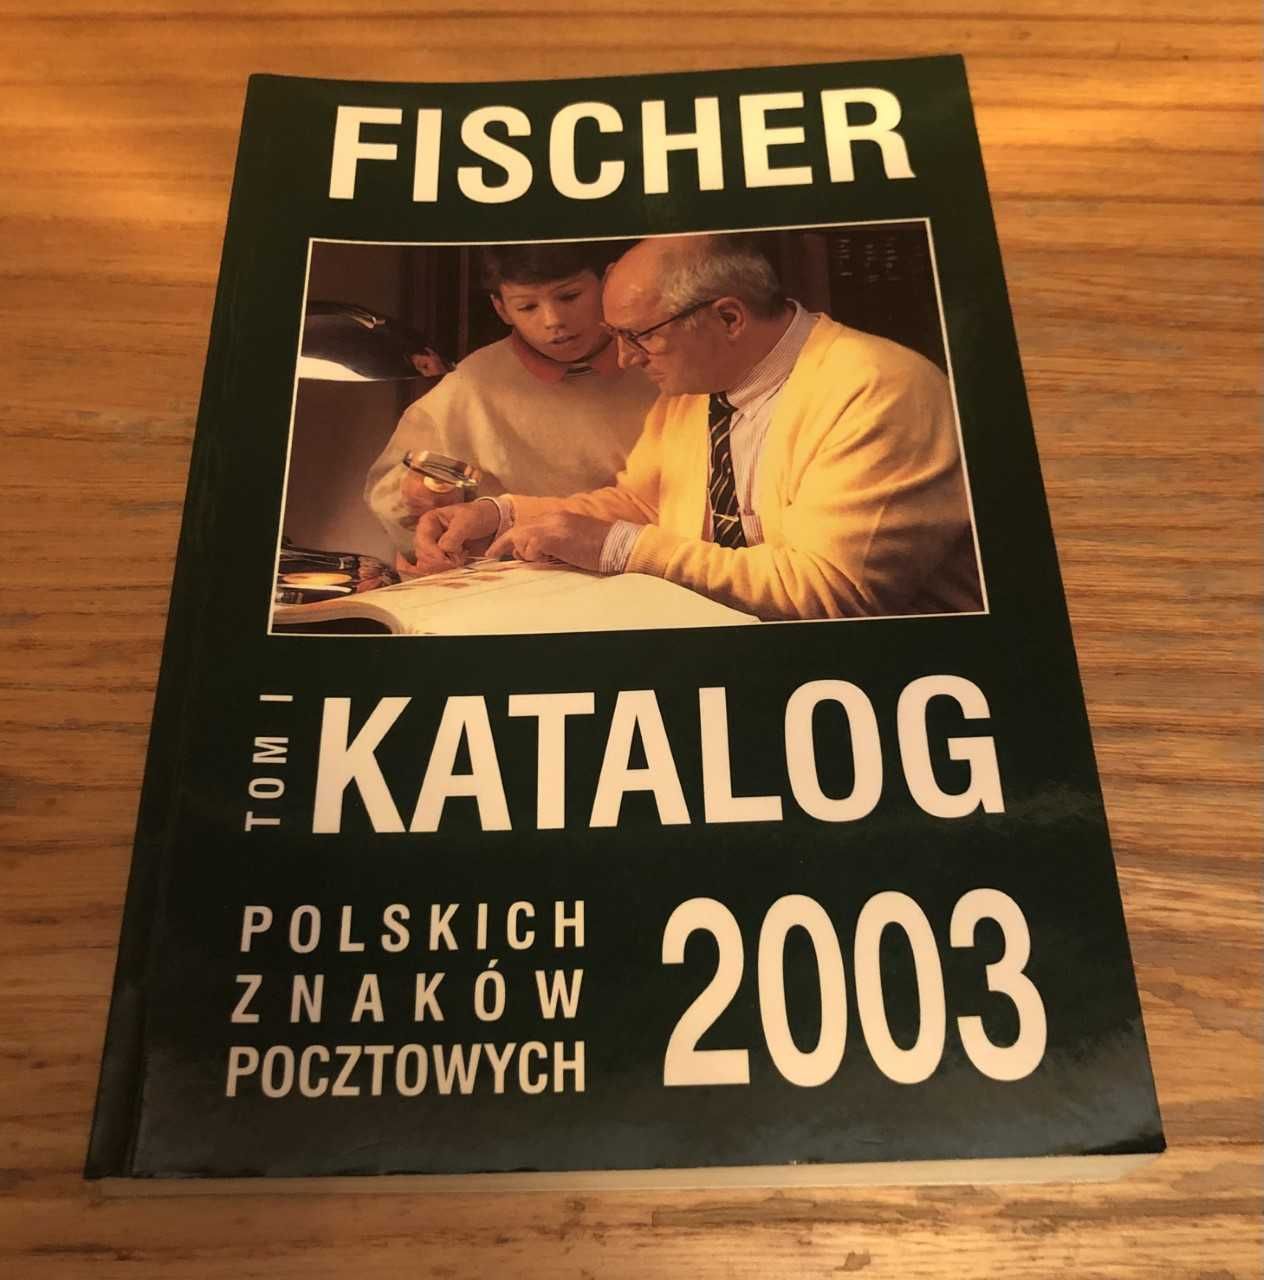 Katalog polskich znaków pocztowych 2003 tom 1 fischer